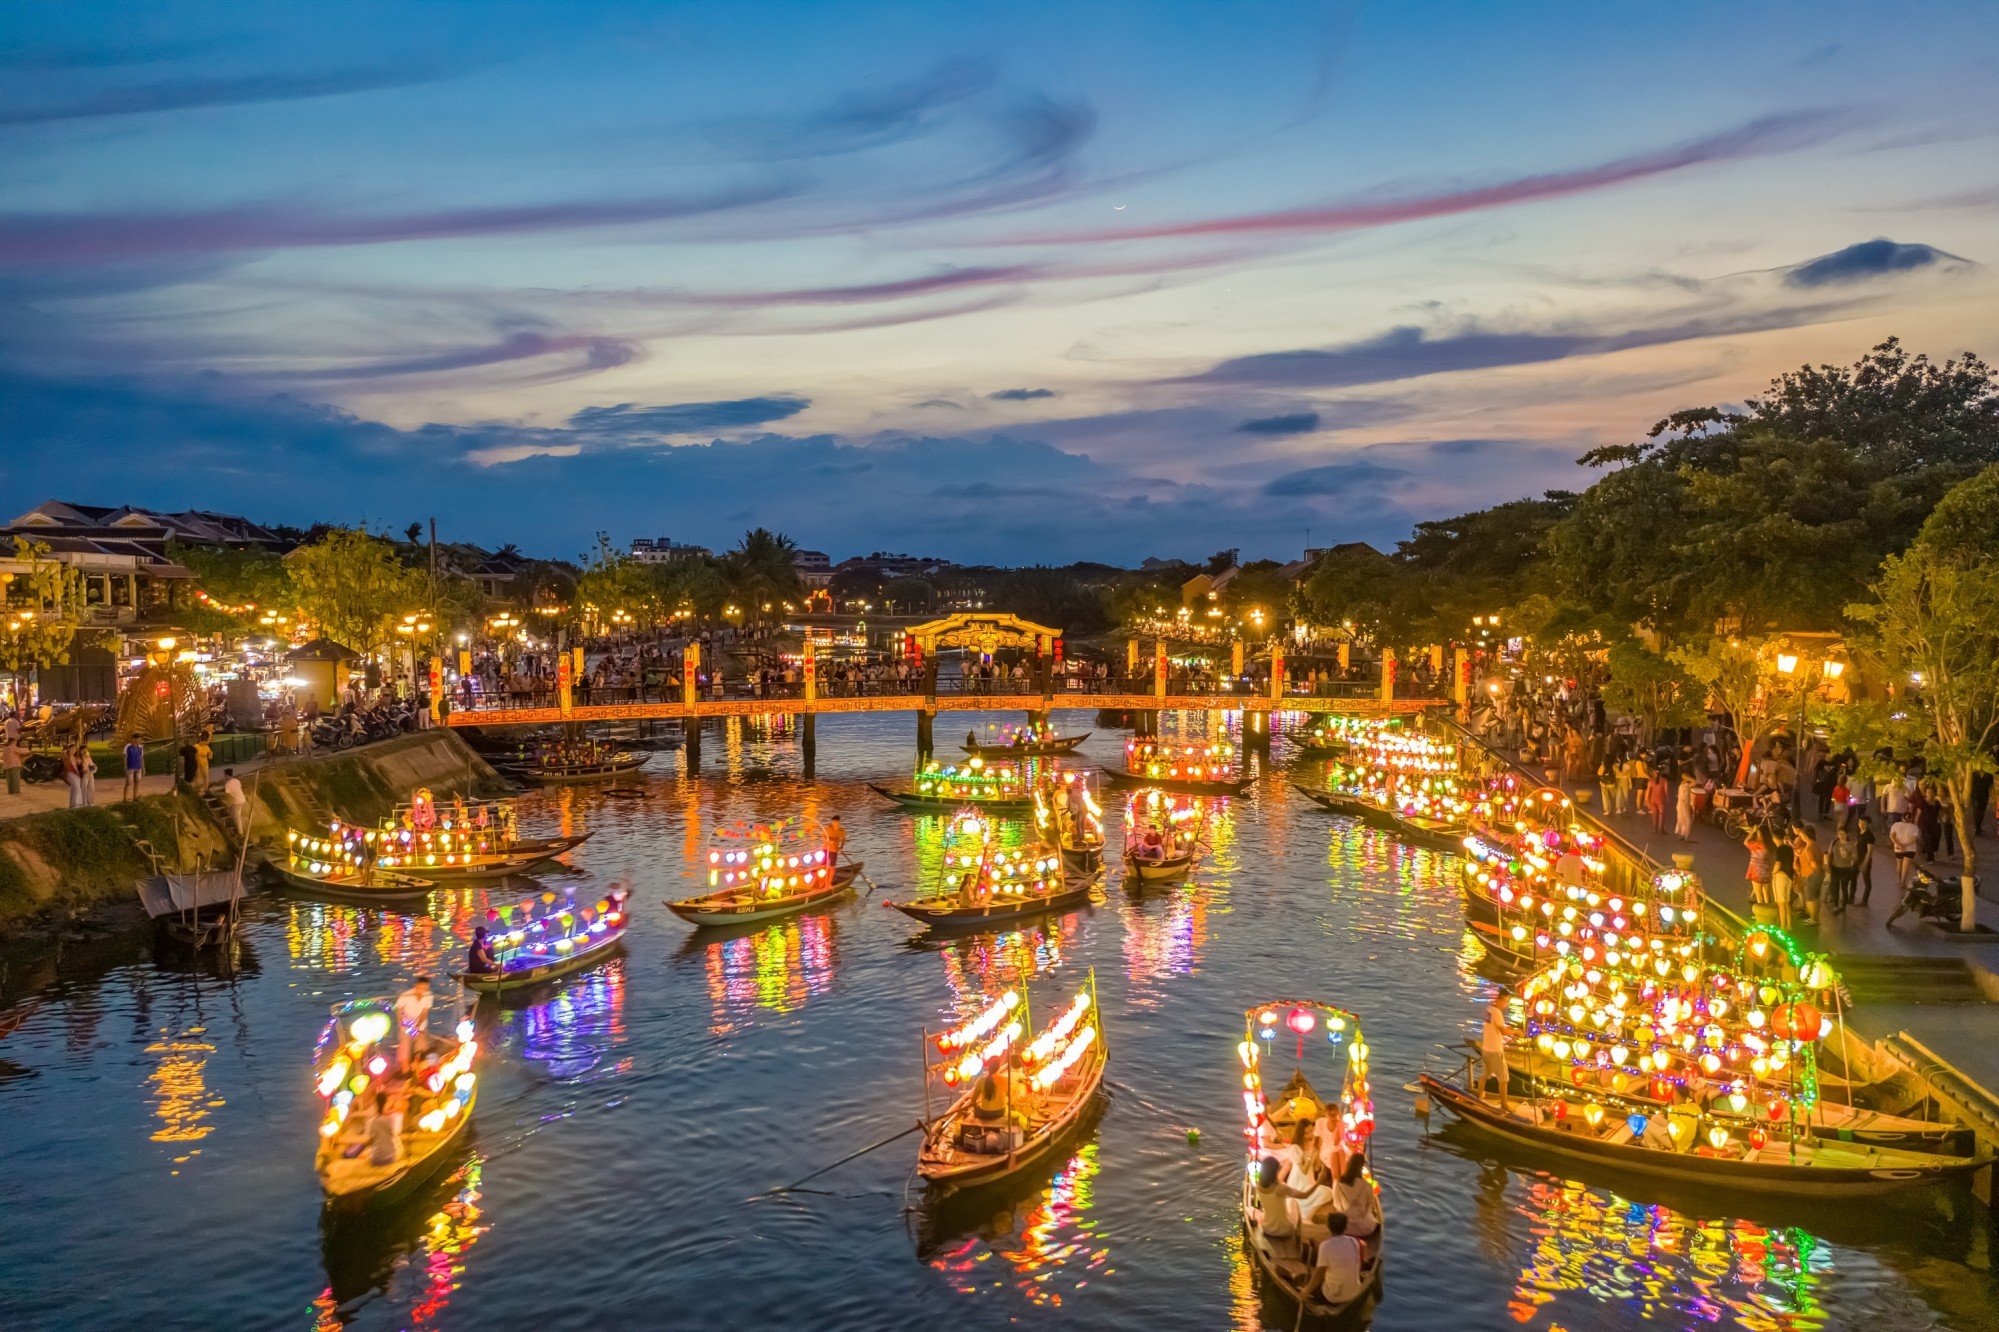 Báo quốc tế: Hội An, Việt Nam là một trong những thành phố có biển đẹp nhất thế giới - Ảnh 1.